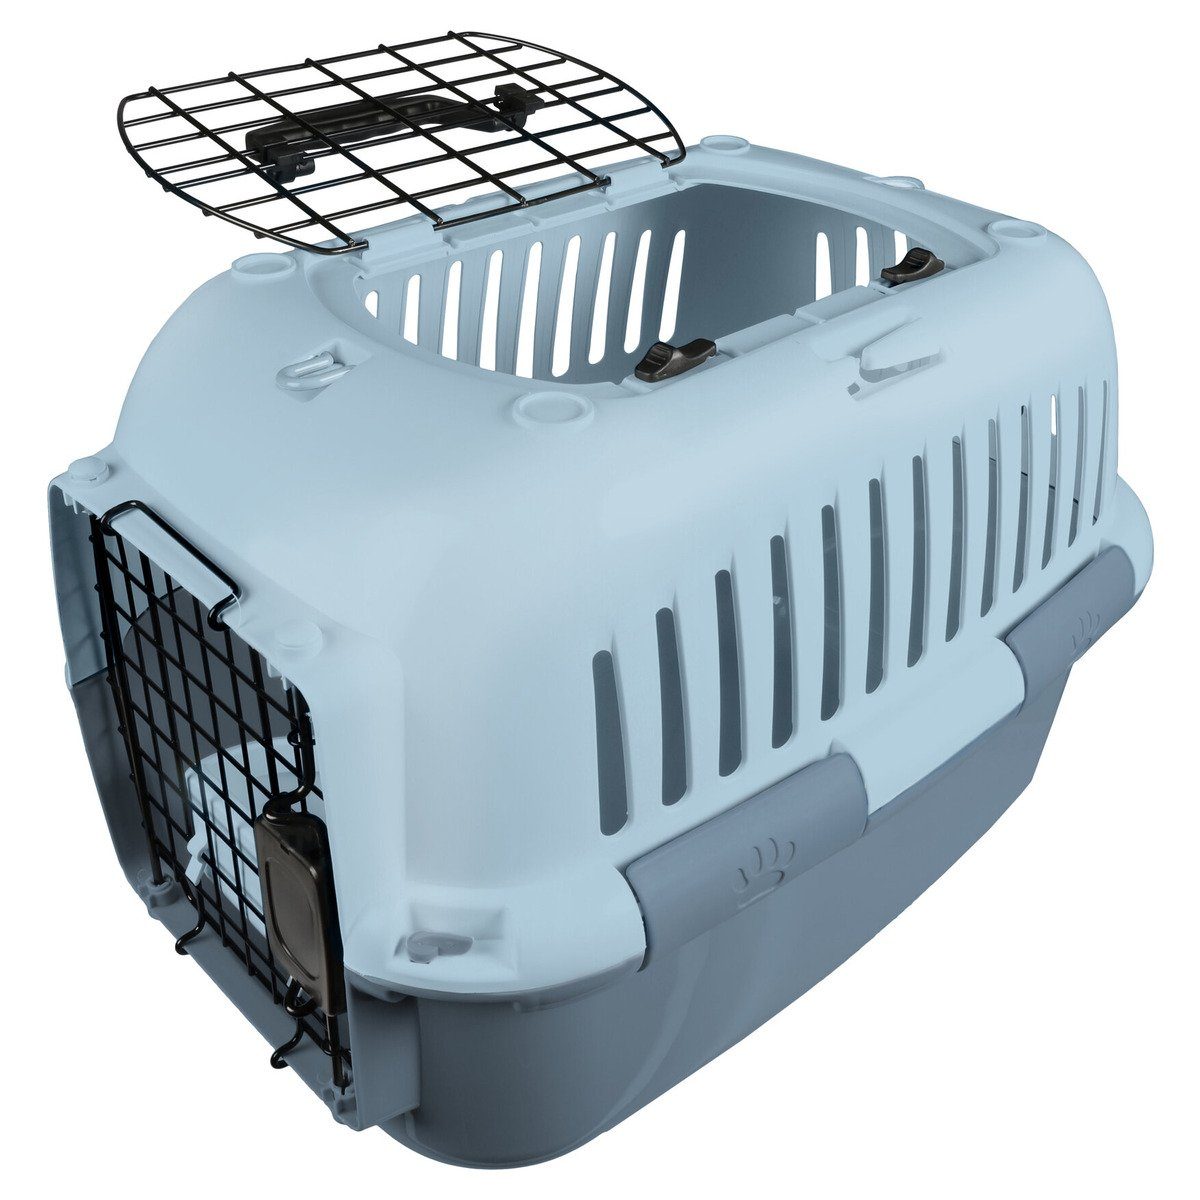 Transportbox für Haustiere Weiß Blau 55x36x36 cm Polypropylen